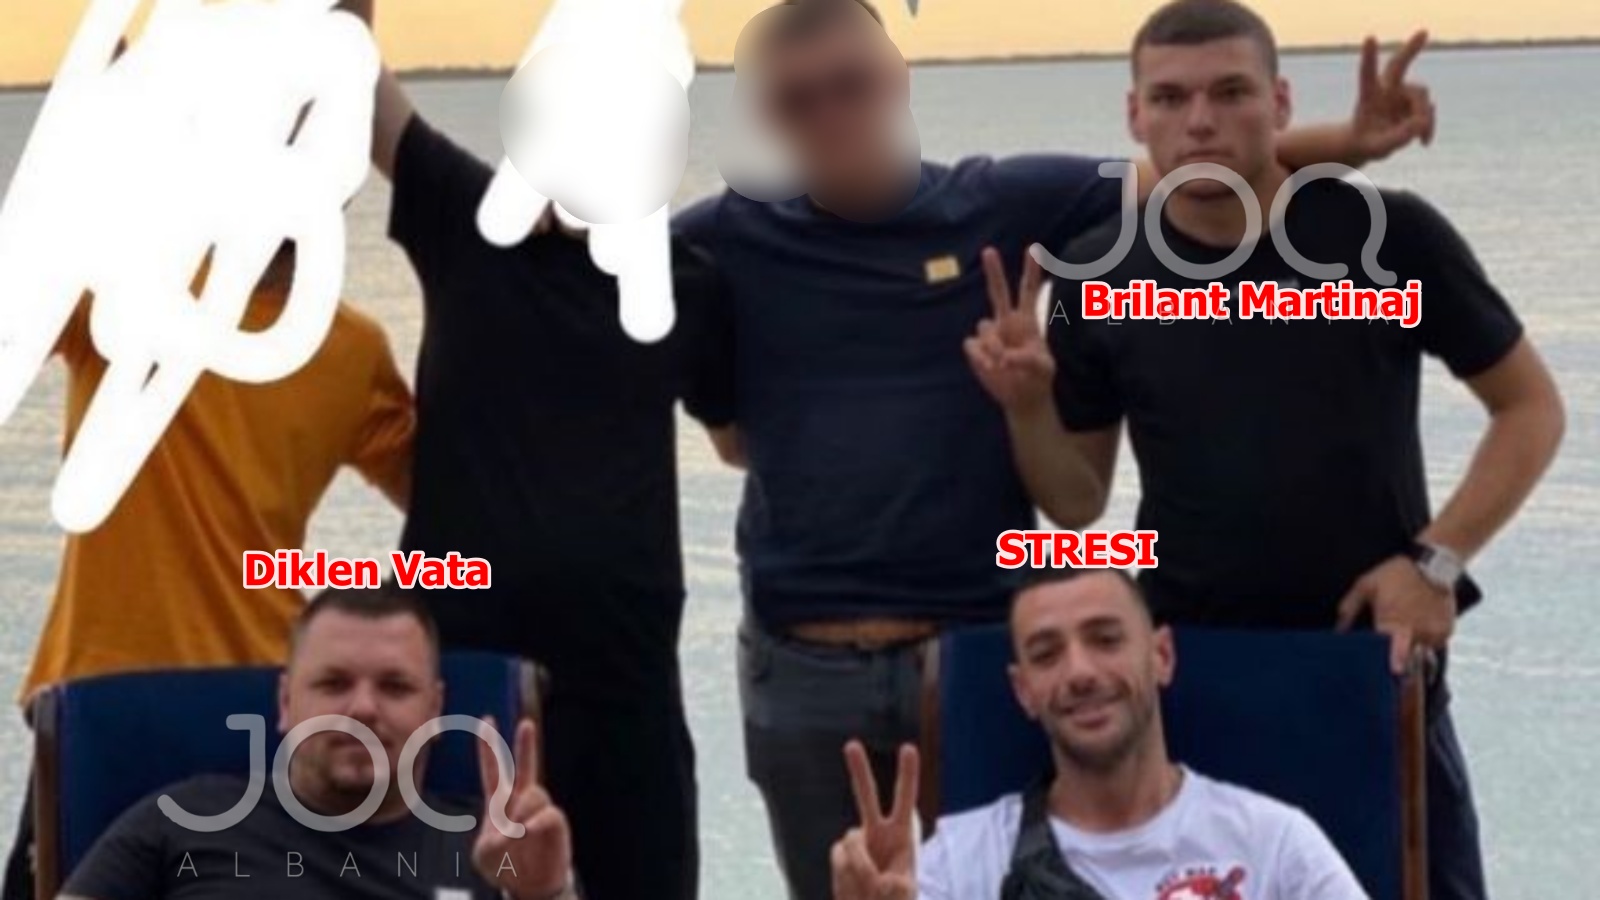 U vranë sot në Fushë-Krujë, Brilant Martinaj dhe Diklen Vata foto me Stresin  dhe grupin e tij - infowebtv.com